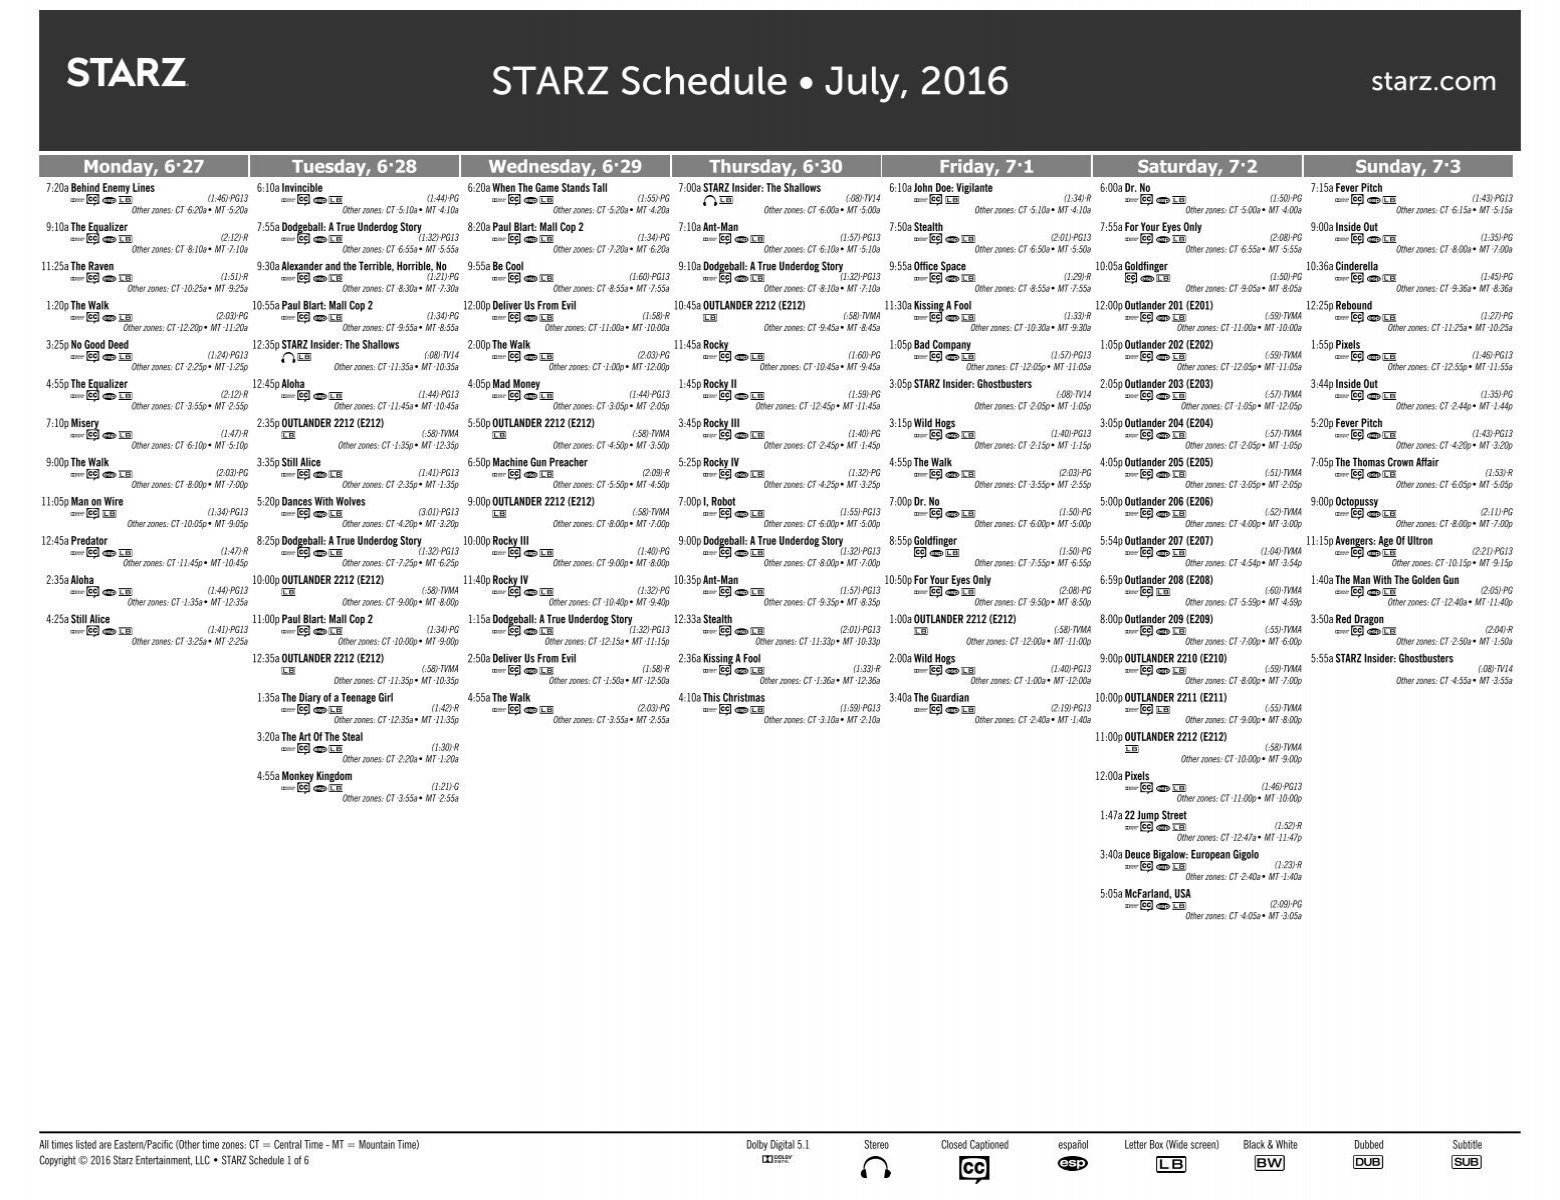 STARZ Schedule • July 2016